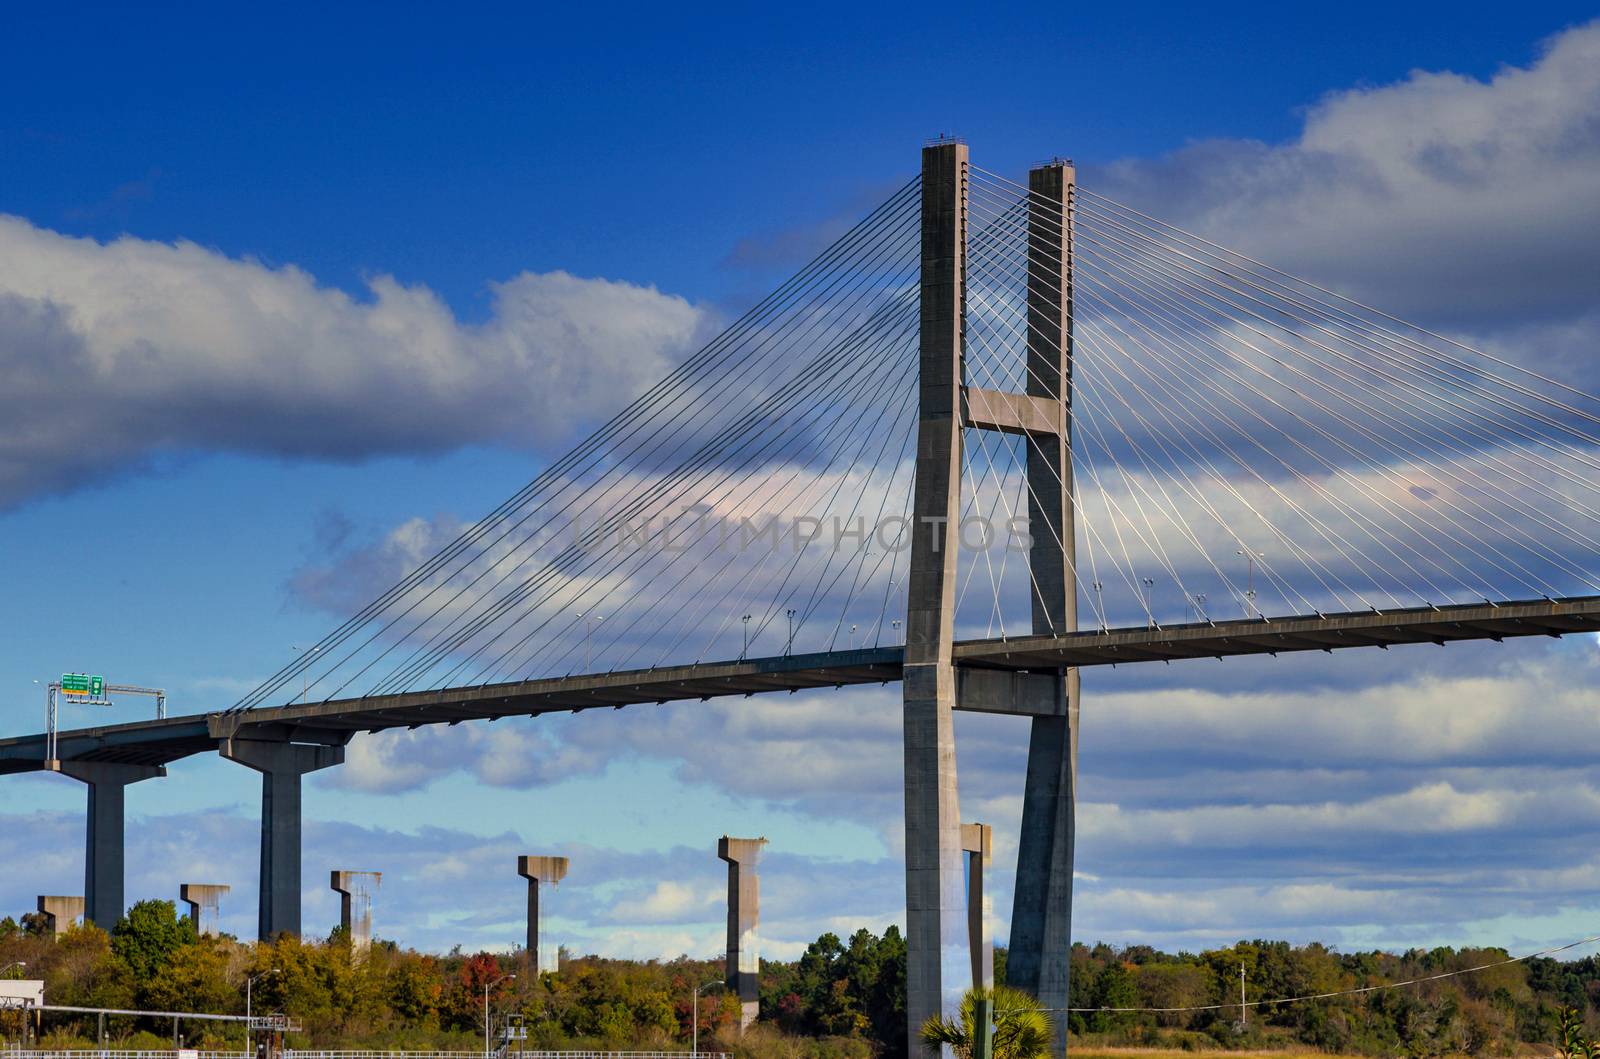 Suspension Bridge over the Savannah river in Georgia